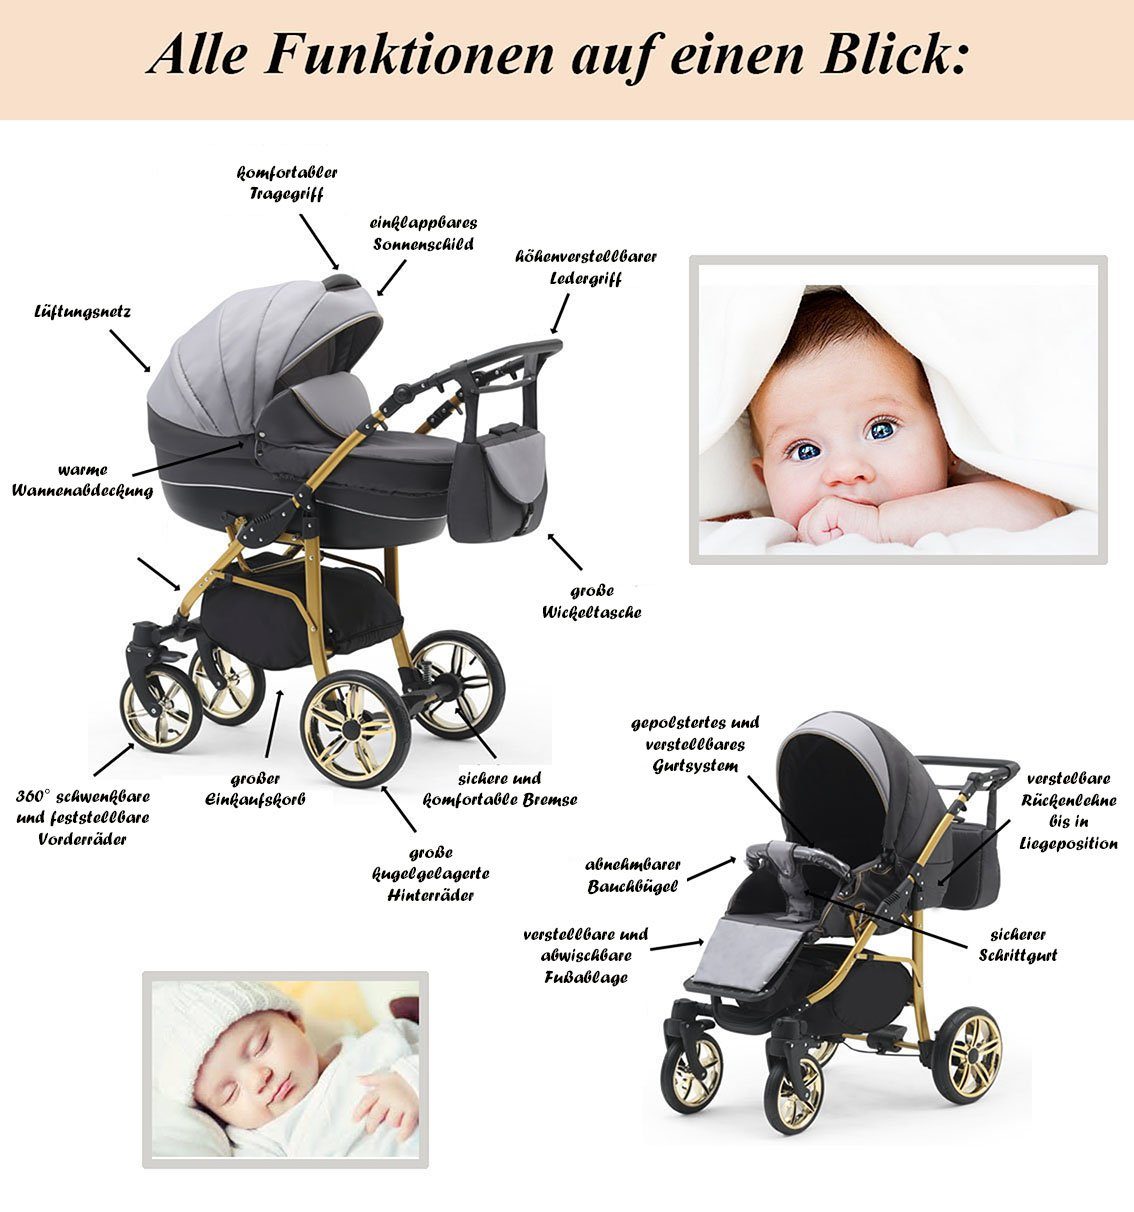 babies-on-wheels Kombi-Kinderwagen 2 in - 13 Farben 46 Gold Teile Cosmo Rosa-Bordeaux-Weiß - ECO Kinderwagen-Set in 1